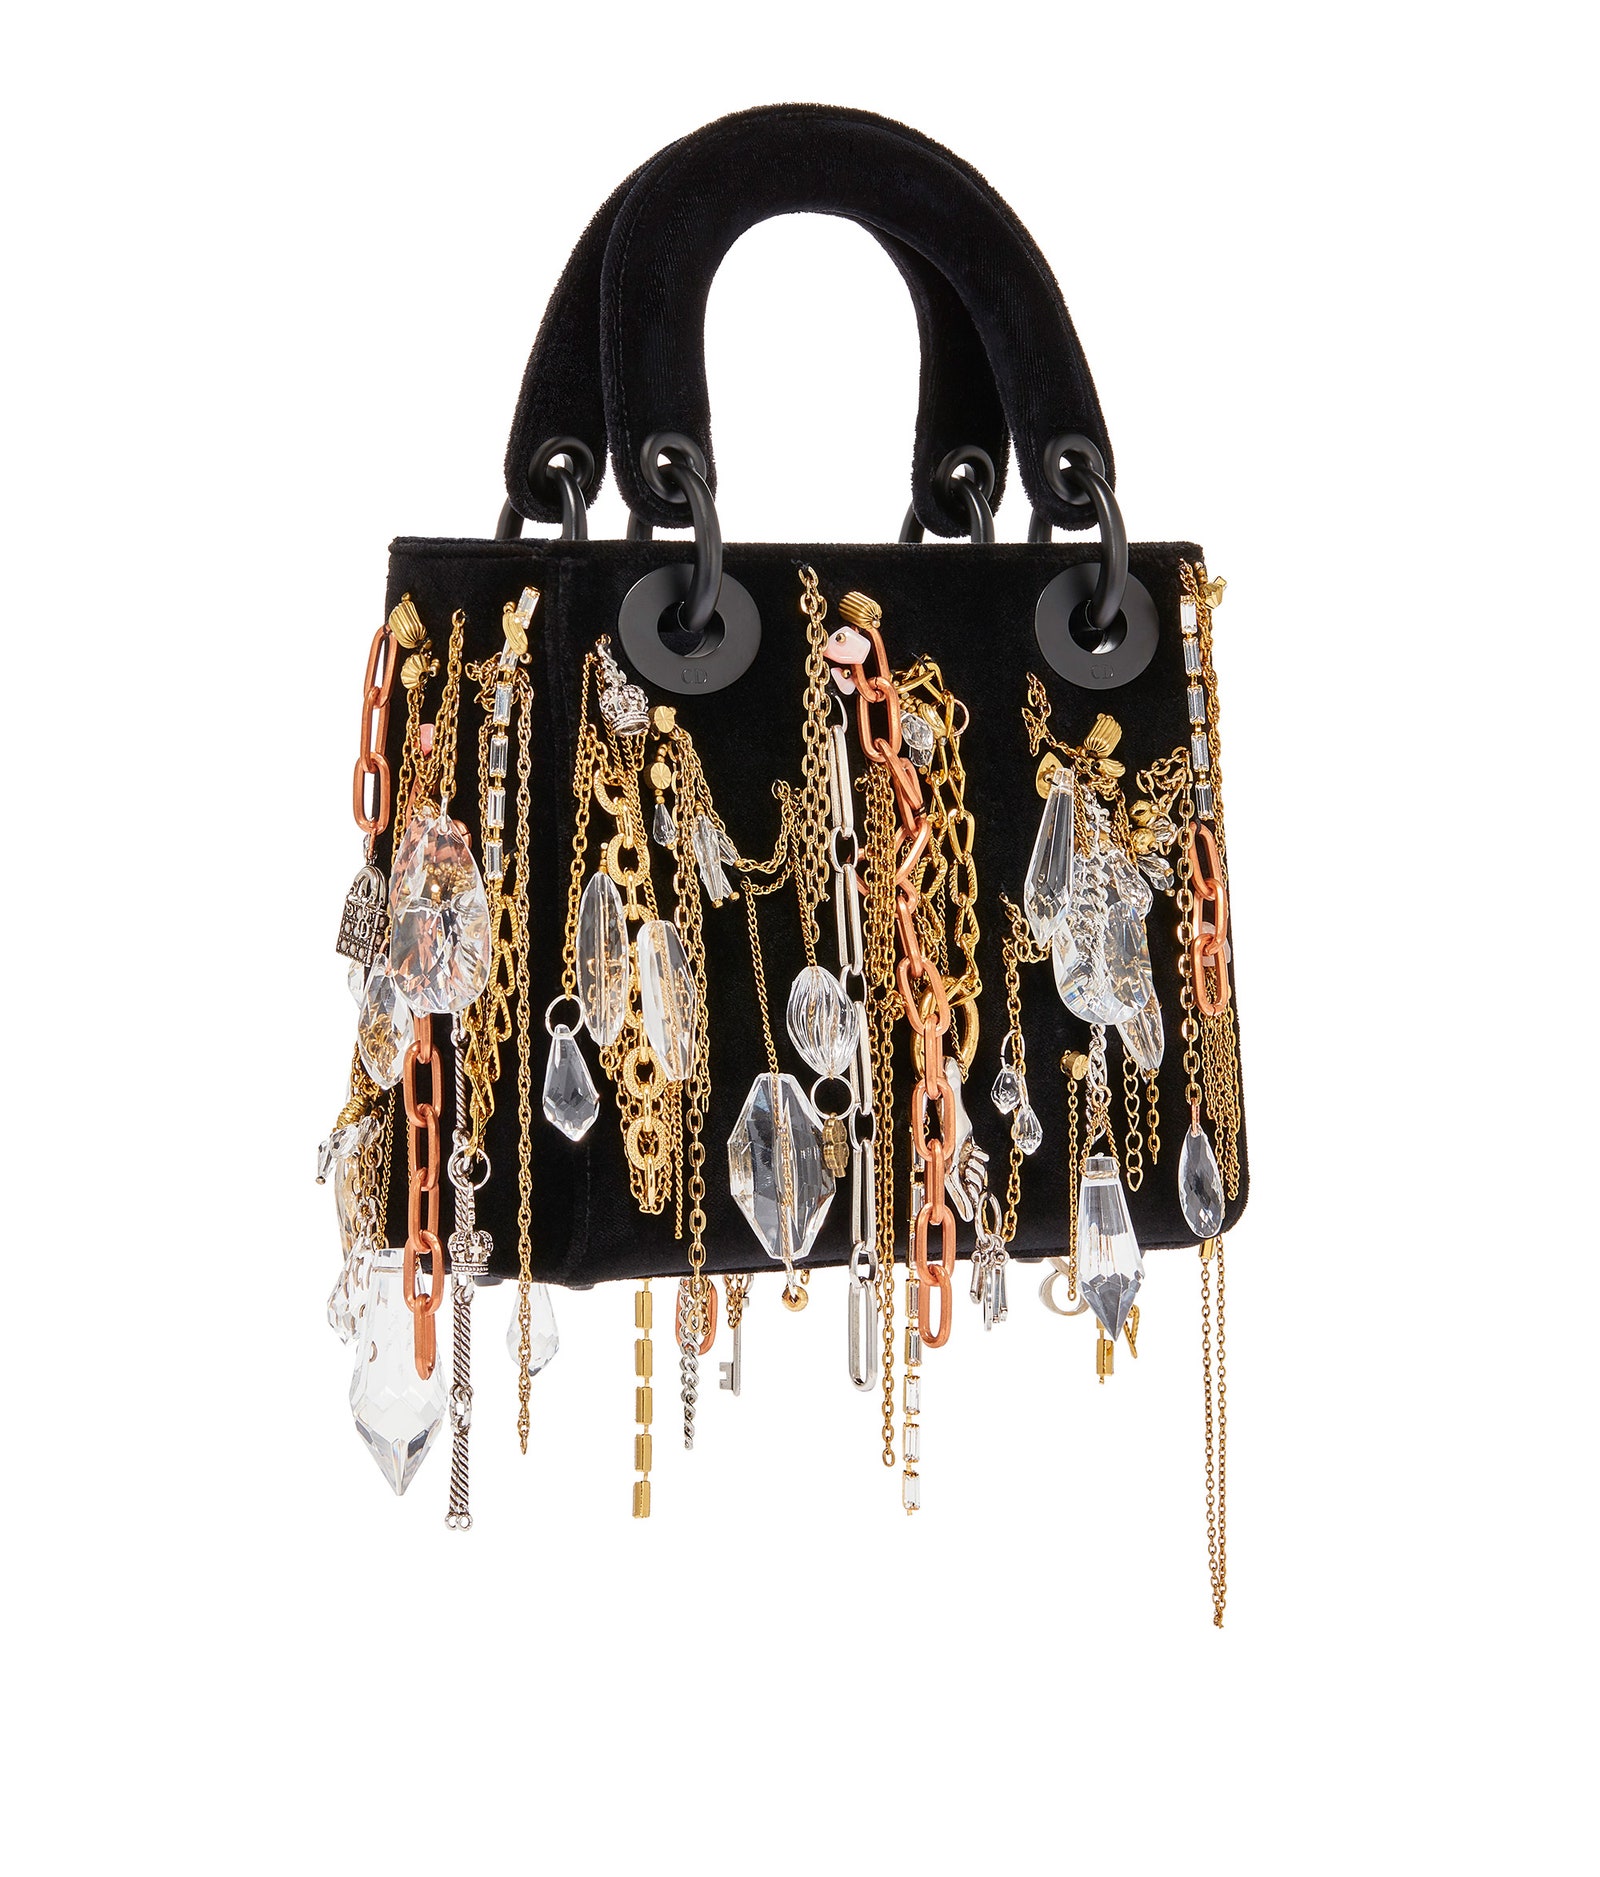 Dior Lady Art 11 художников представили интерпретации легендарной модели сумки